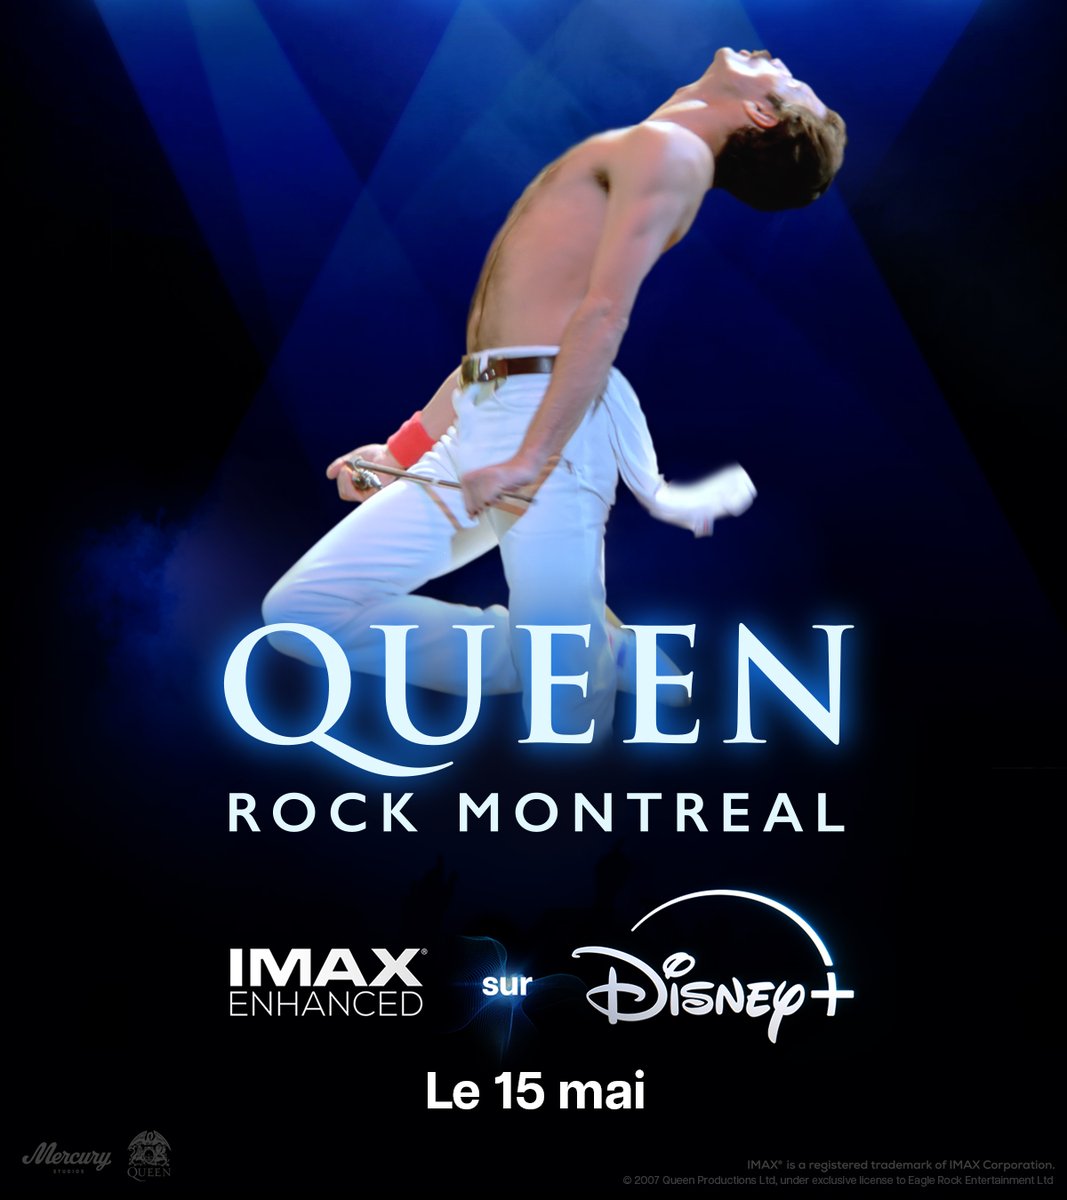 Assistez à un concert de Queen comme vous ne l'avez jamais vu dans Queen Rock Montreal, avec un son IMAX Enhanced proposé par DTS, sur #DisneyPlus.